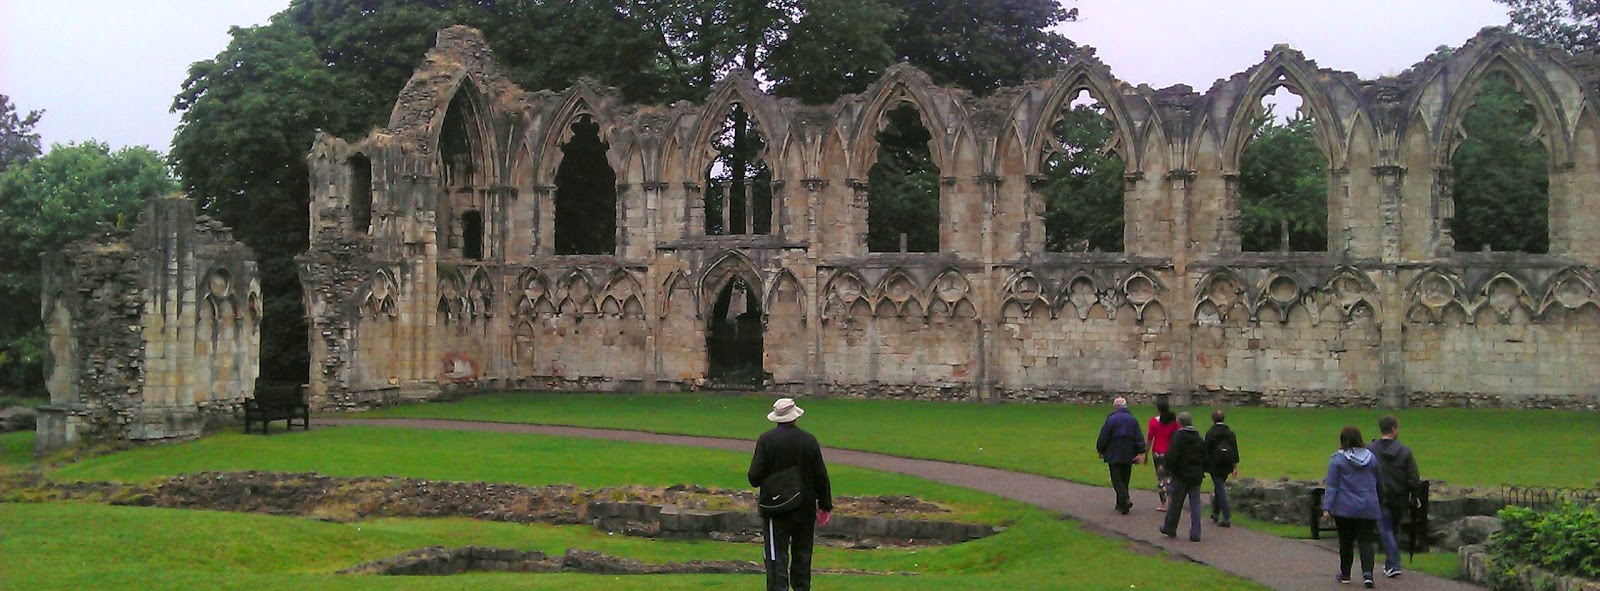 Viajes con Historia: York, la reina del norte - Ruinas de la abadía de Santa María